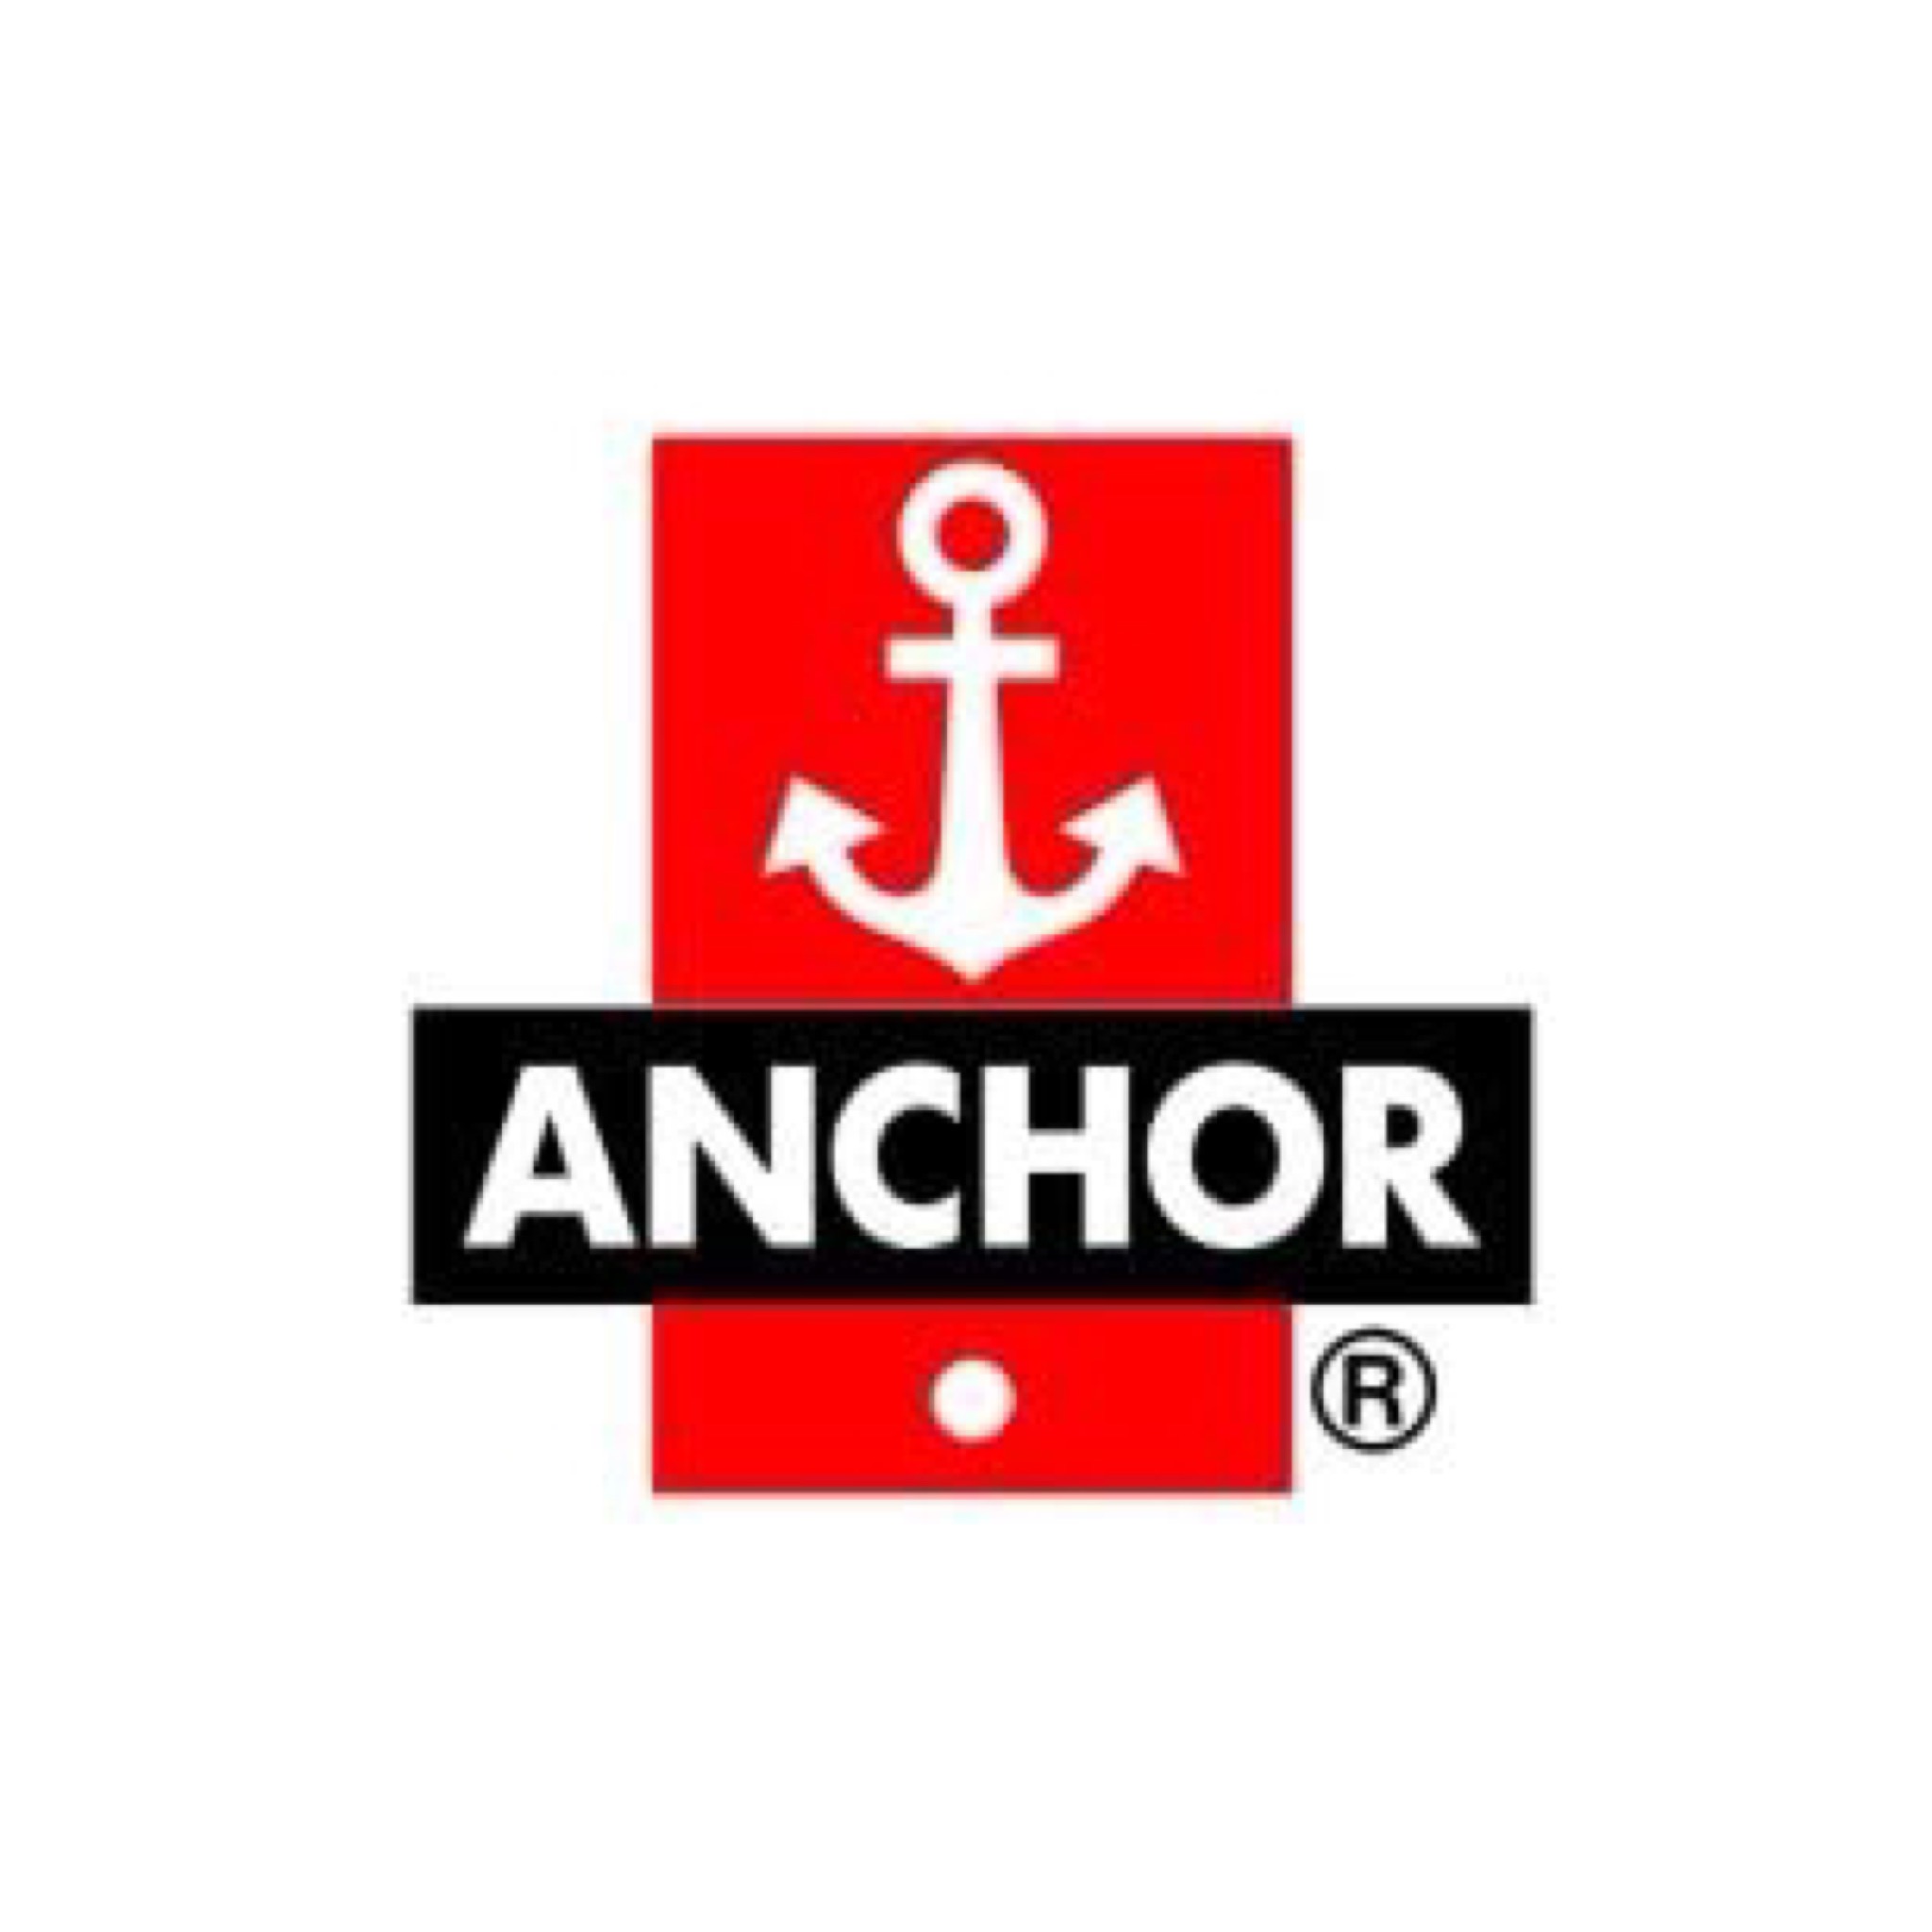 #Anchor